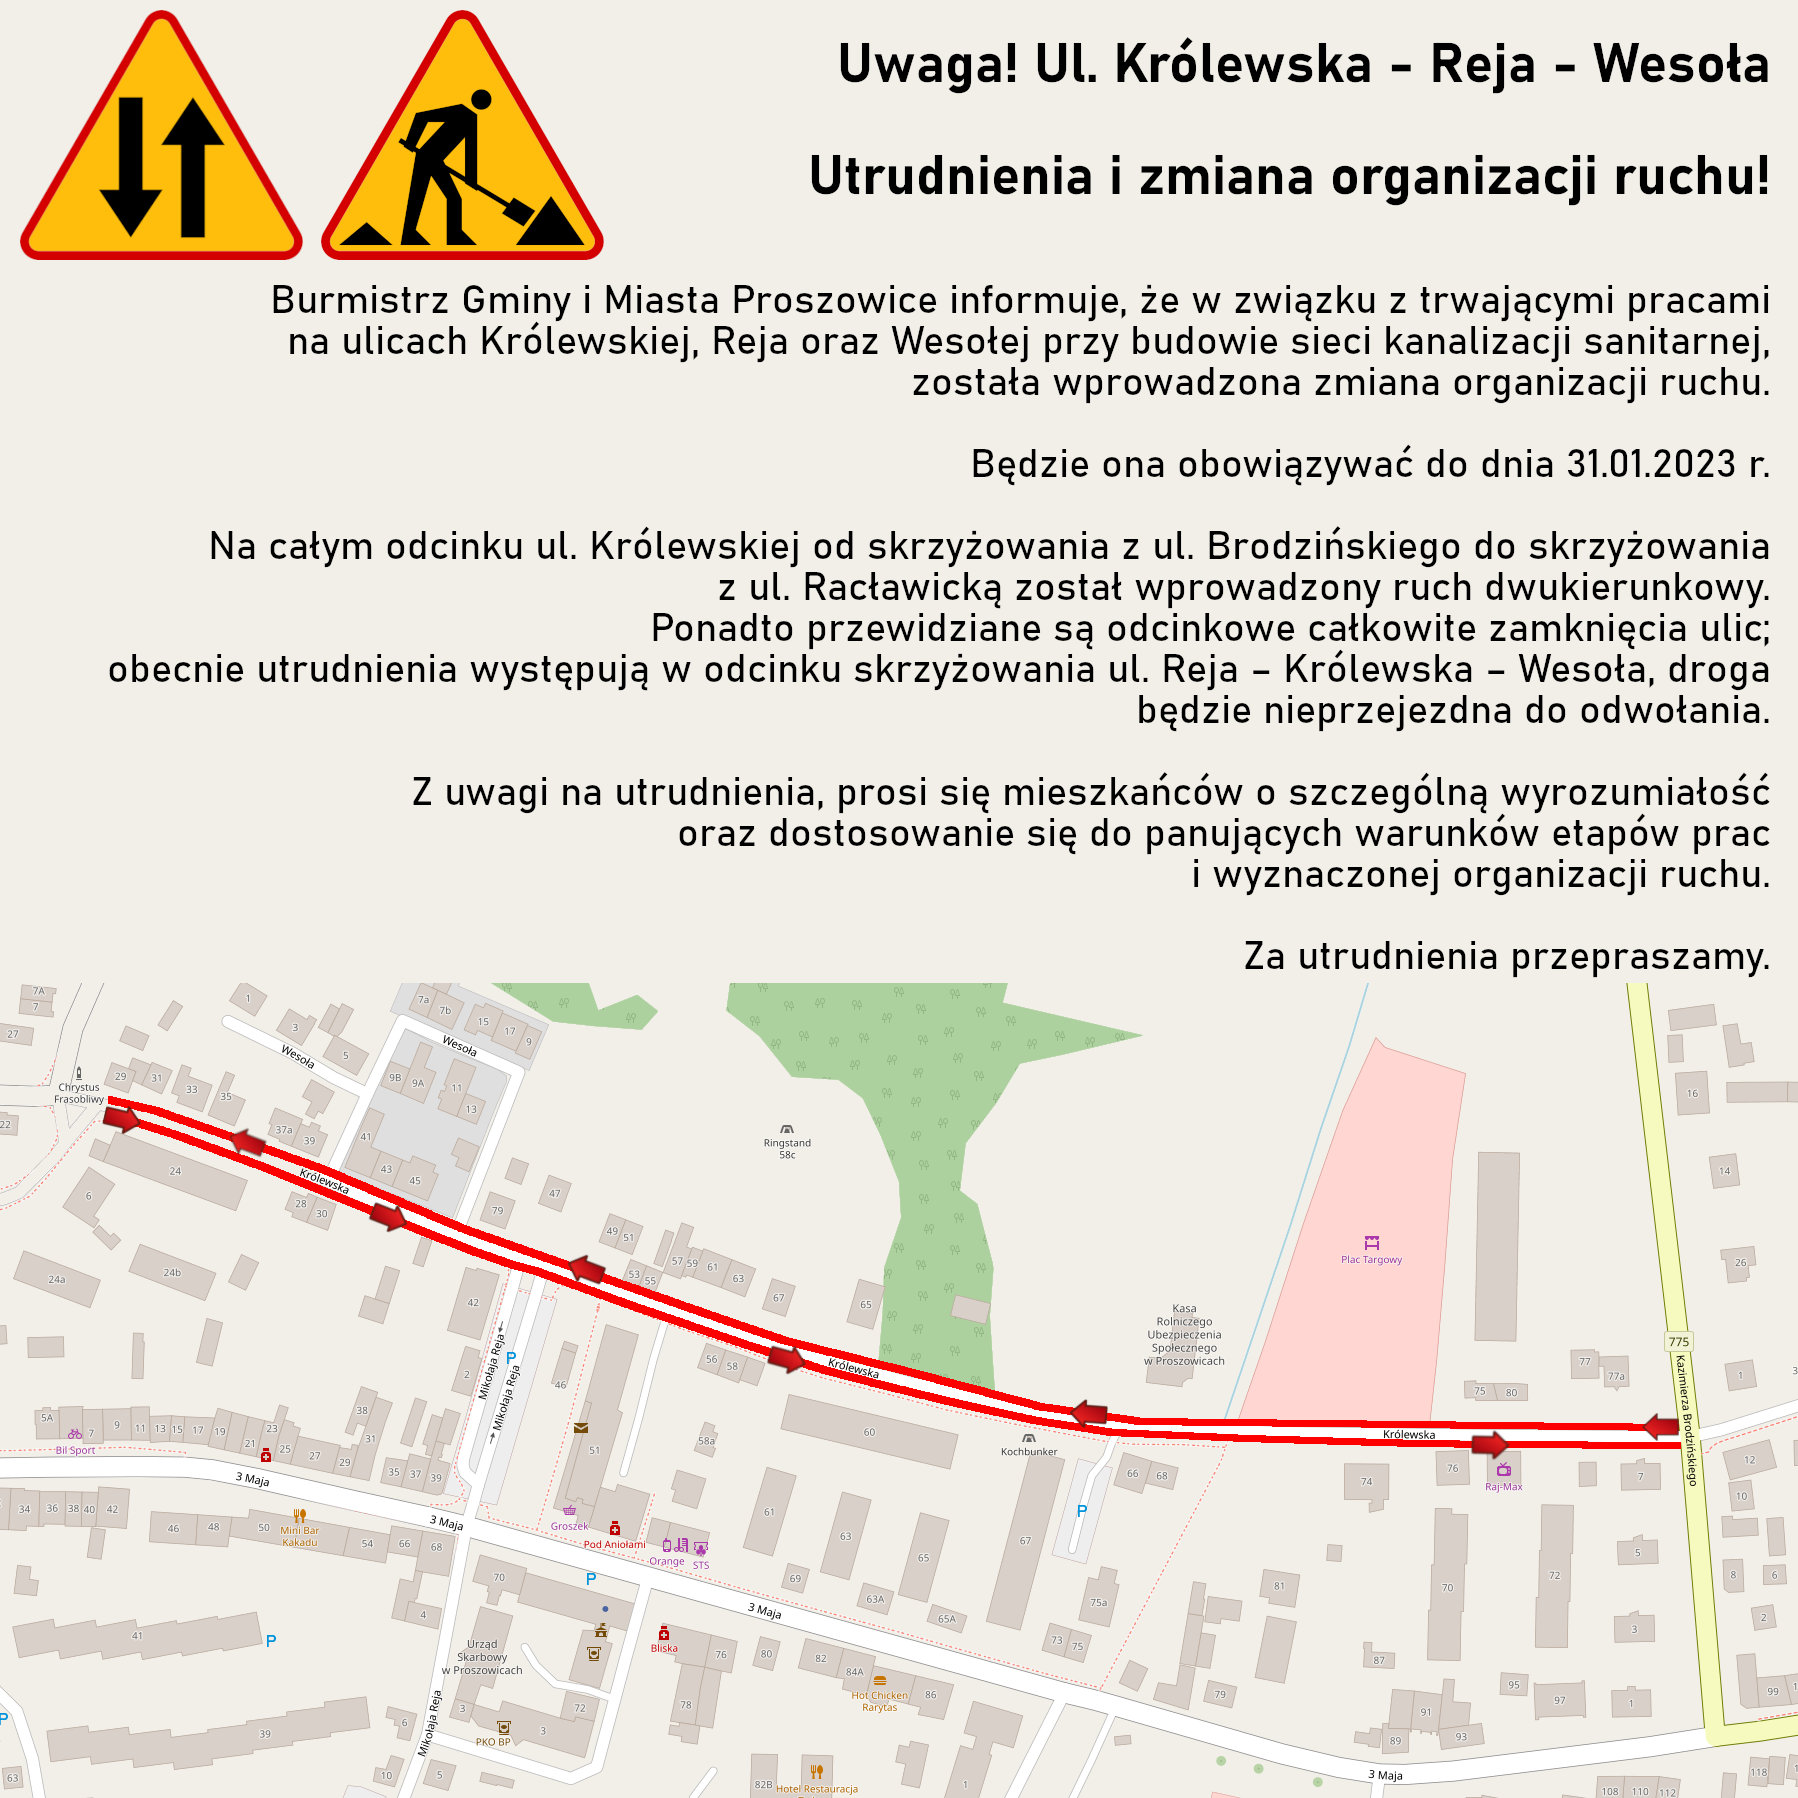 Grafika informująca o utrudnieniach i zmianie organizacji ruchu na ulicach Królewskiej, Reja oraz Wesołej.